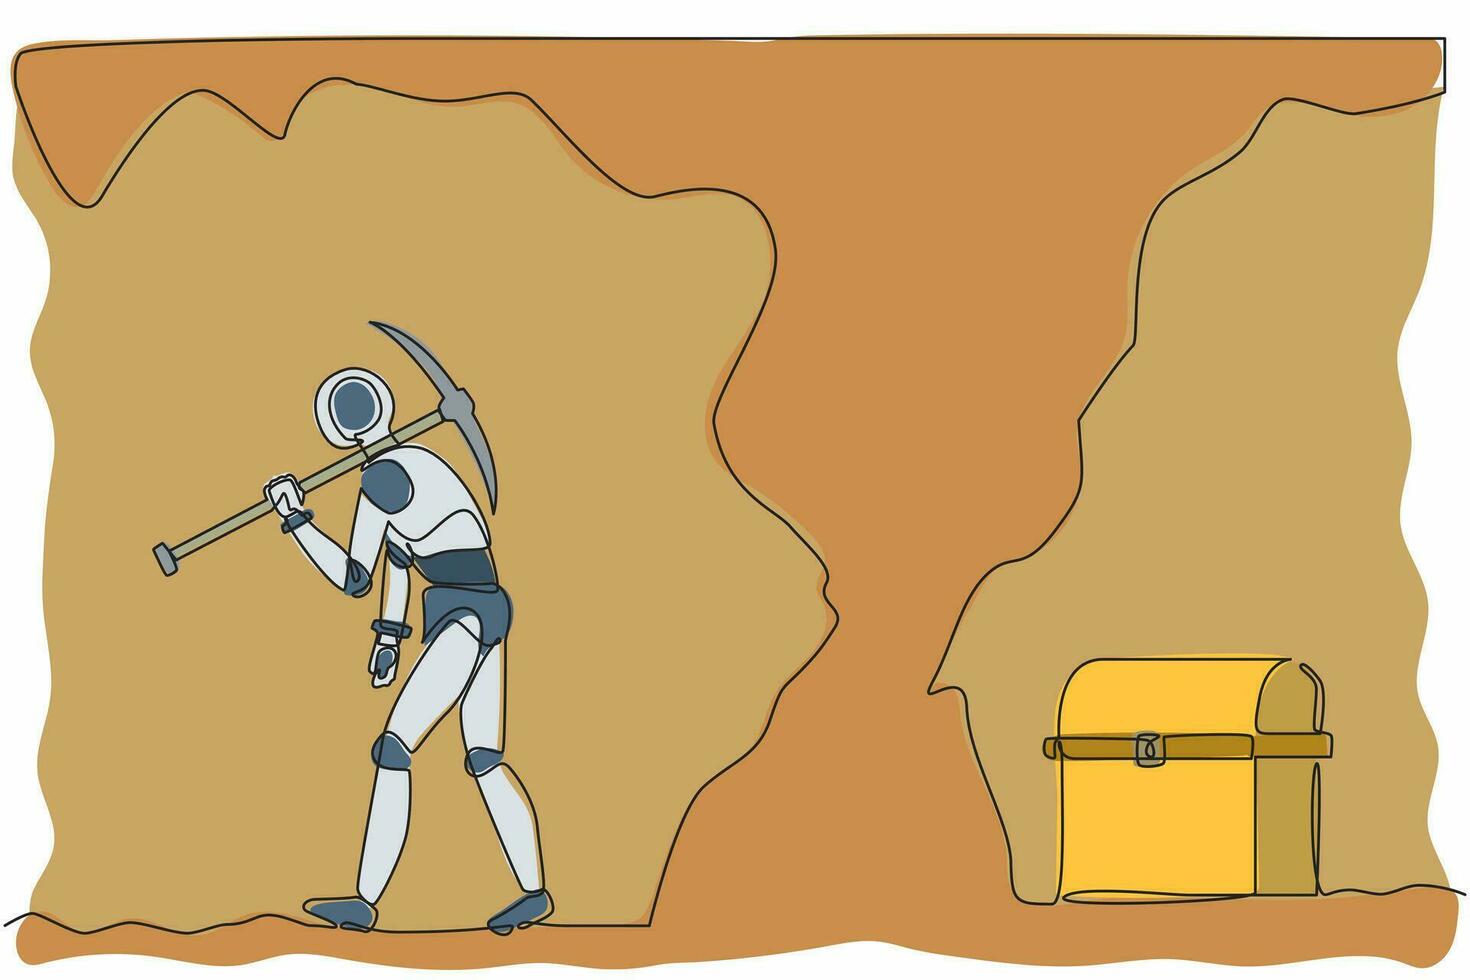 kontinuerlig en rad ritningsrobot ger upp att gräva utan att veta att skattkistan nästan avslöjas. humanoid robot cybernetisk organism. framtida robotik. enda linje design vektorgrafisk illustration vektor